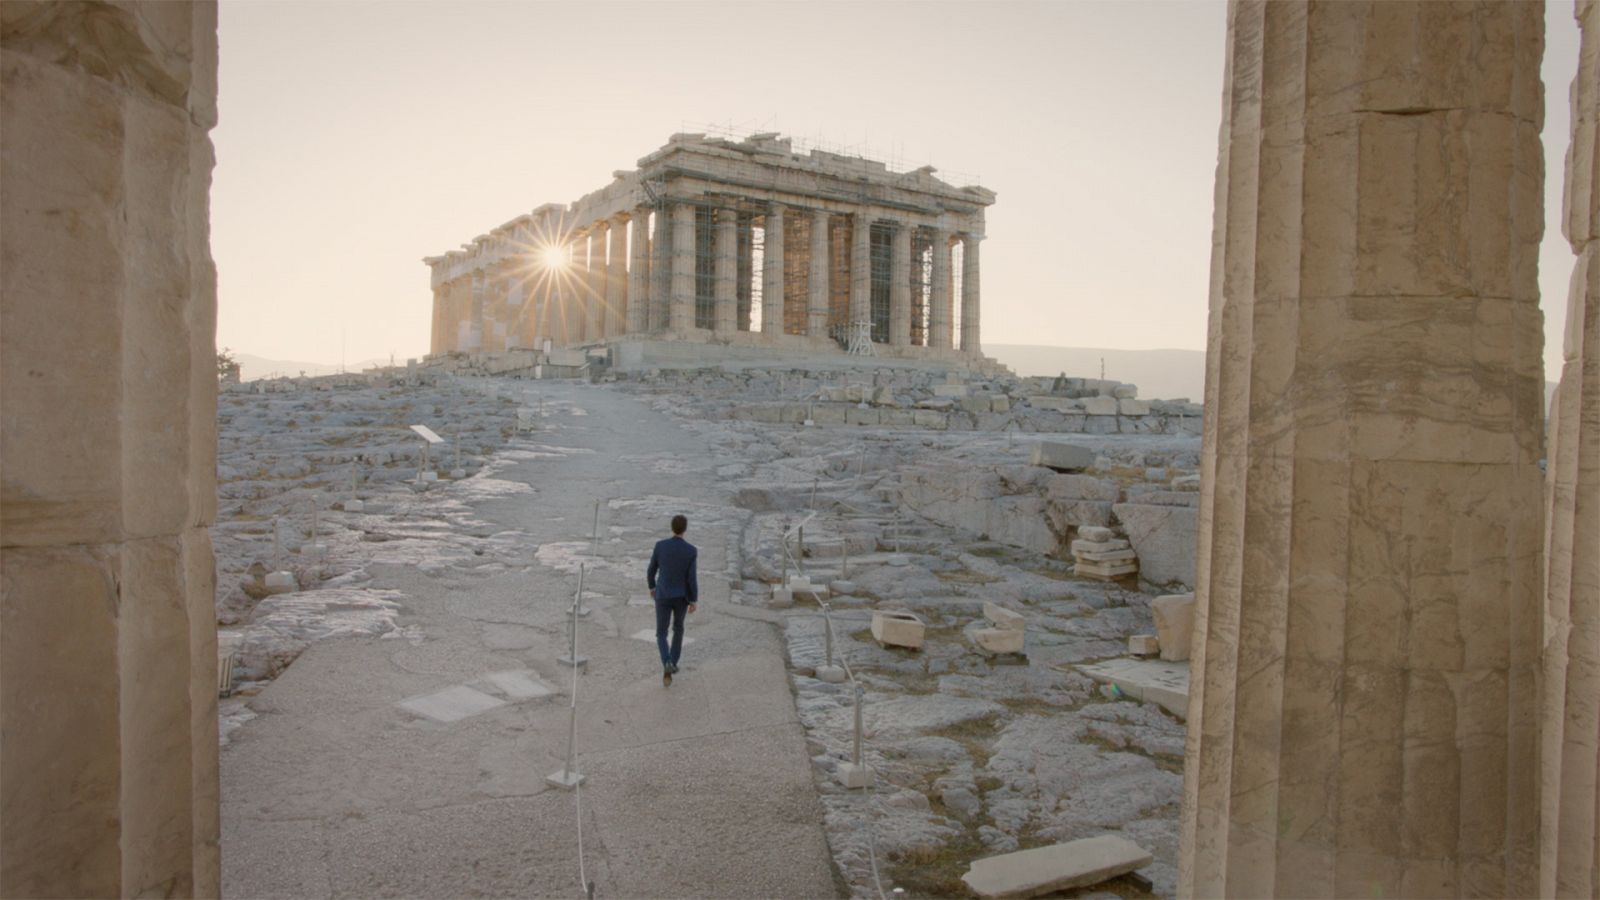 La controversia del arte - Episodio 3: Los mármoles del Partenón - ver ahora